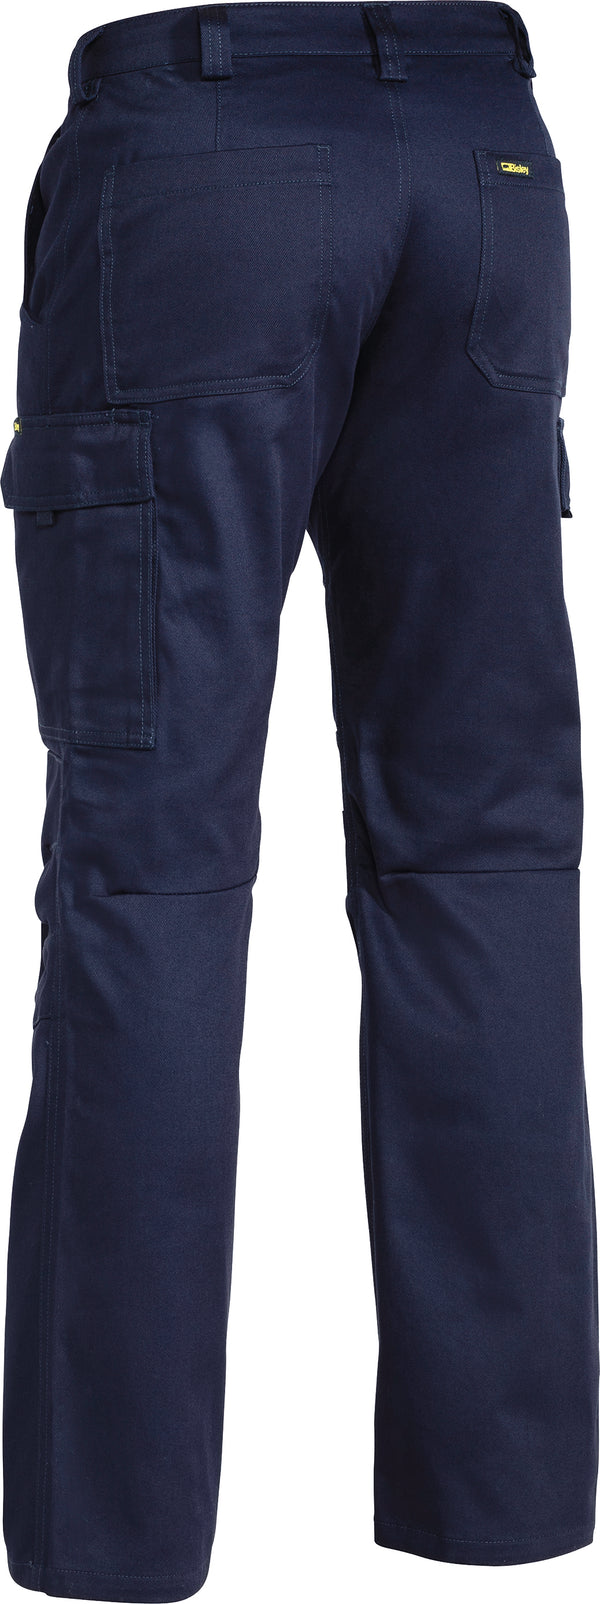 Industrial Engineered Cargo Pants (Regular)